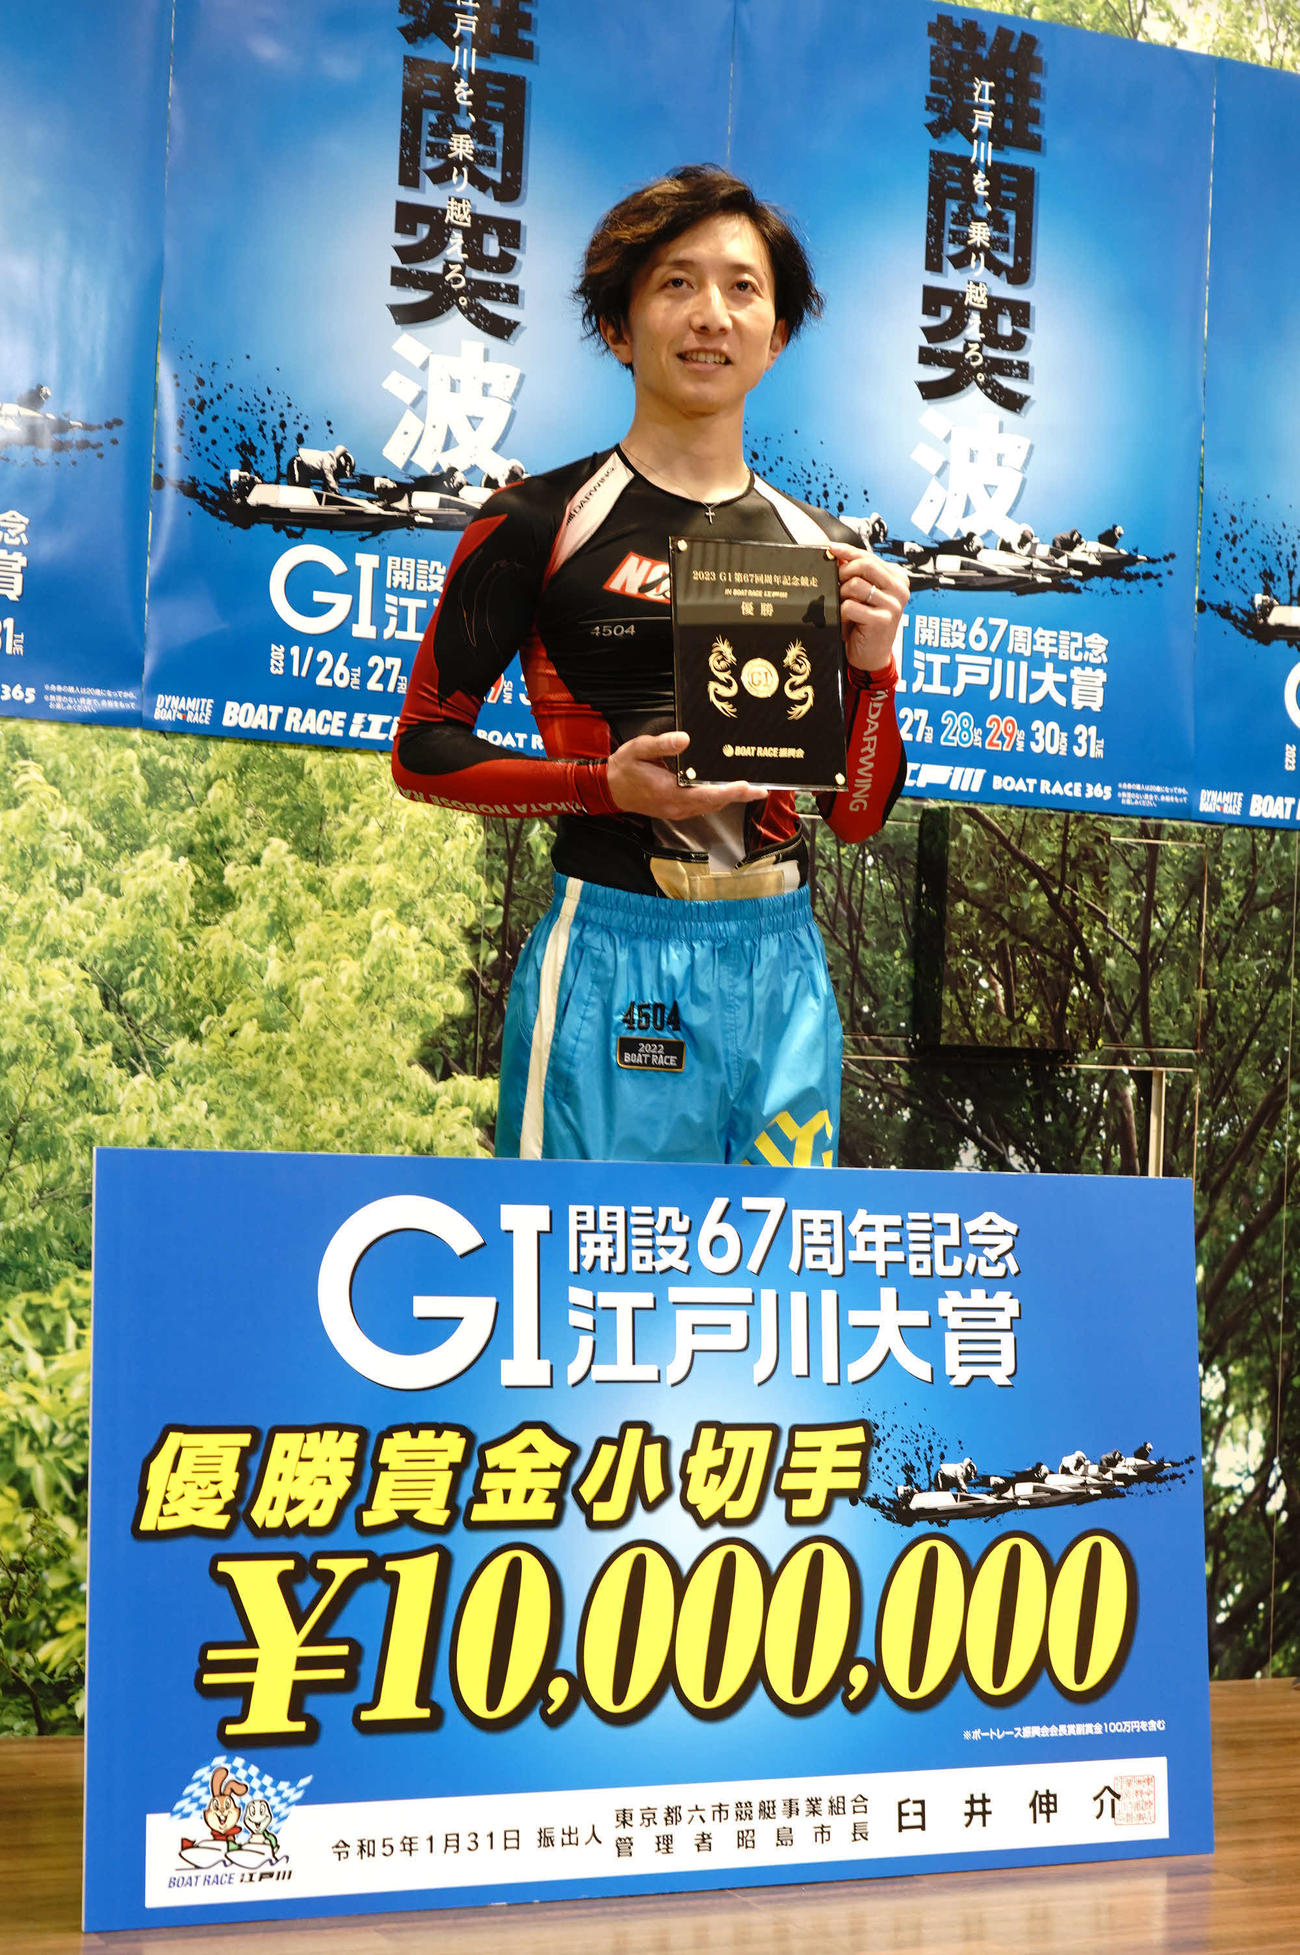 前田将太が江戸川周年を優勝した